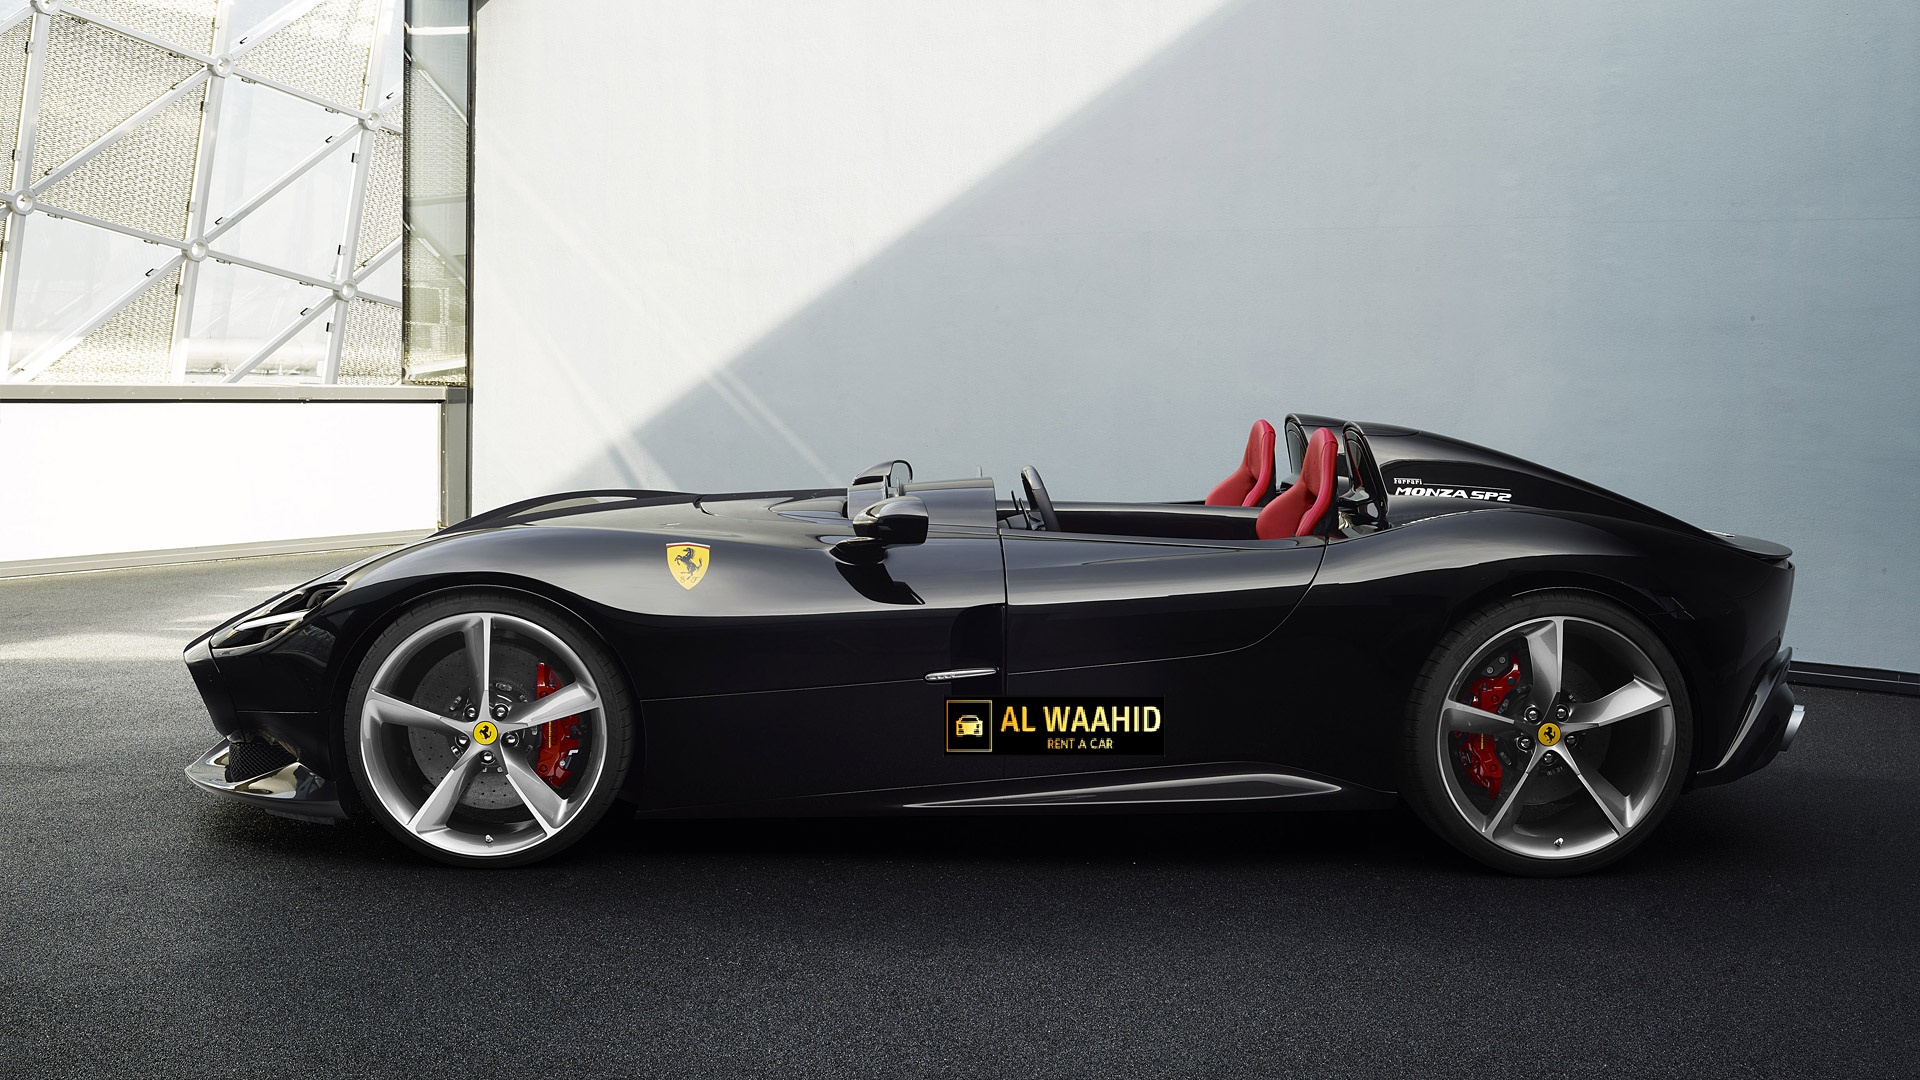 2019 Ferrari Monza SP2 rental dubai luxury cars rental dubai